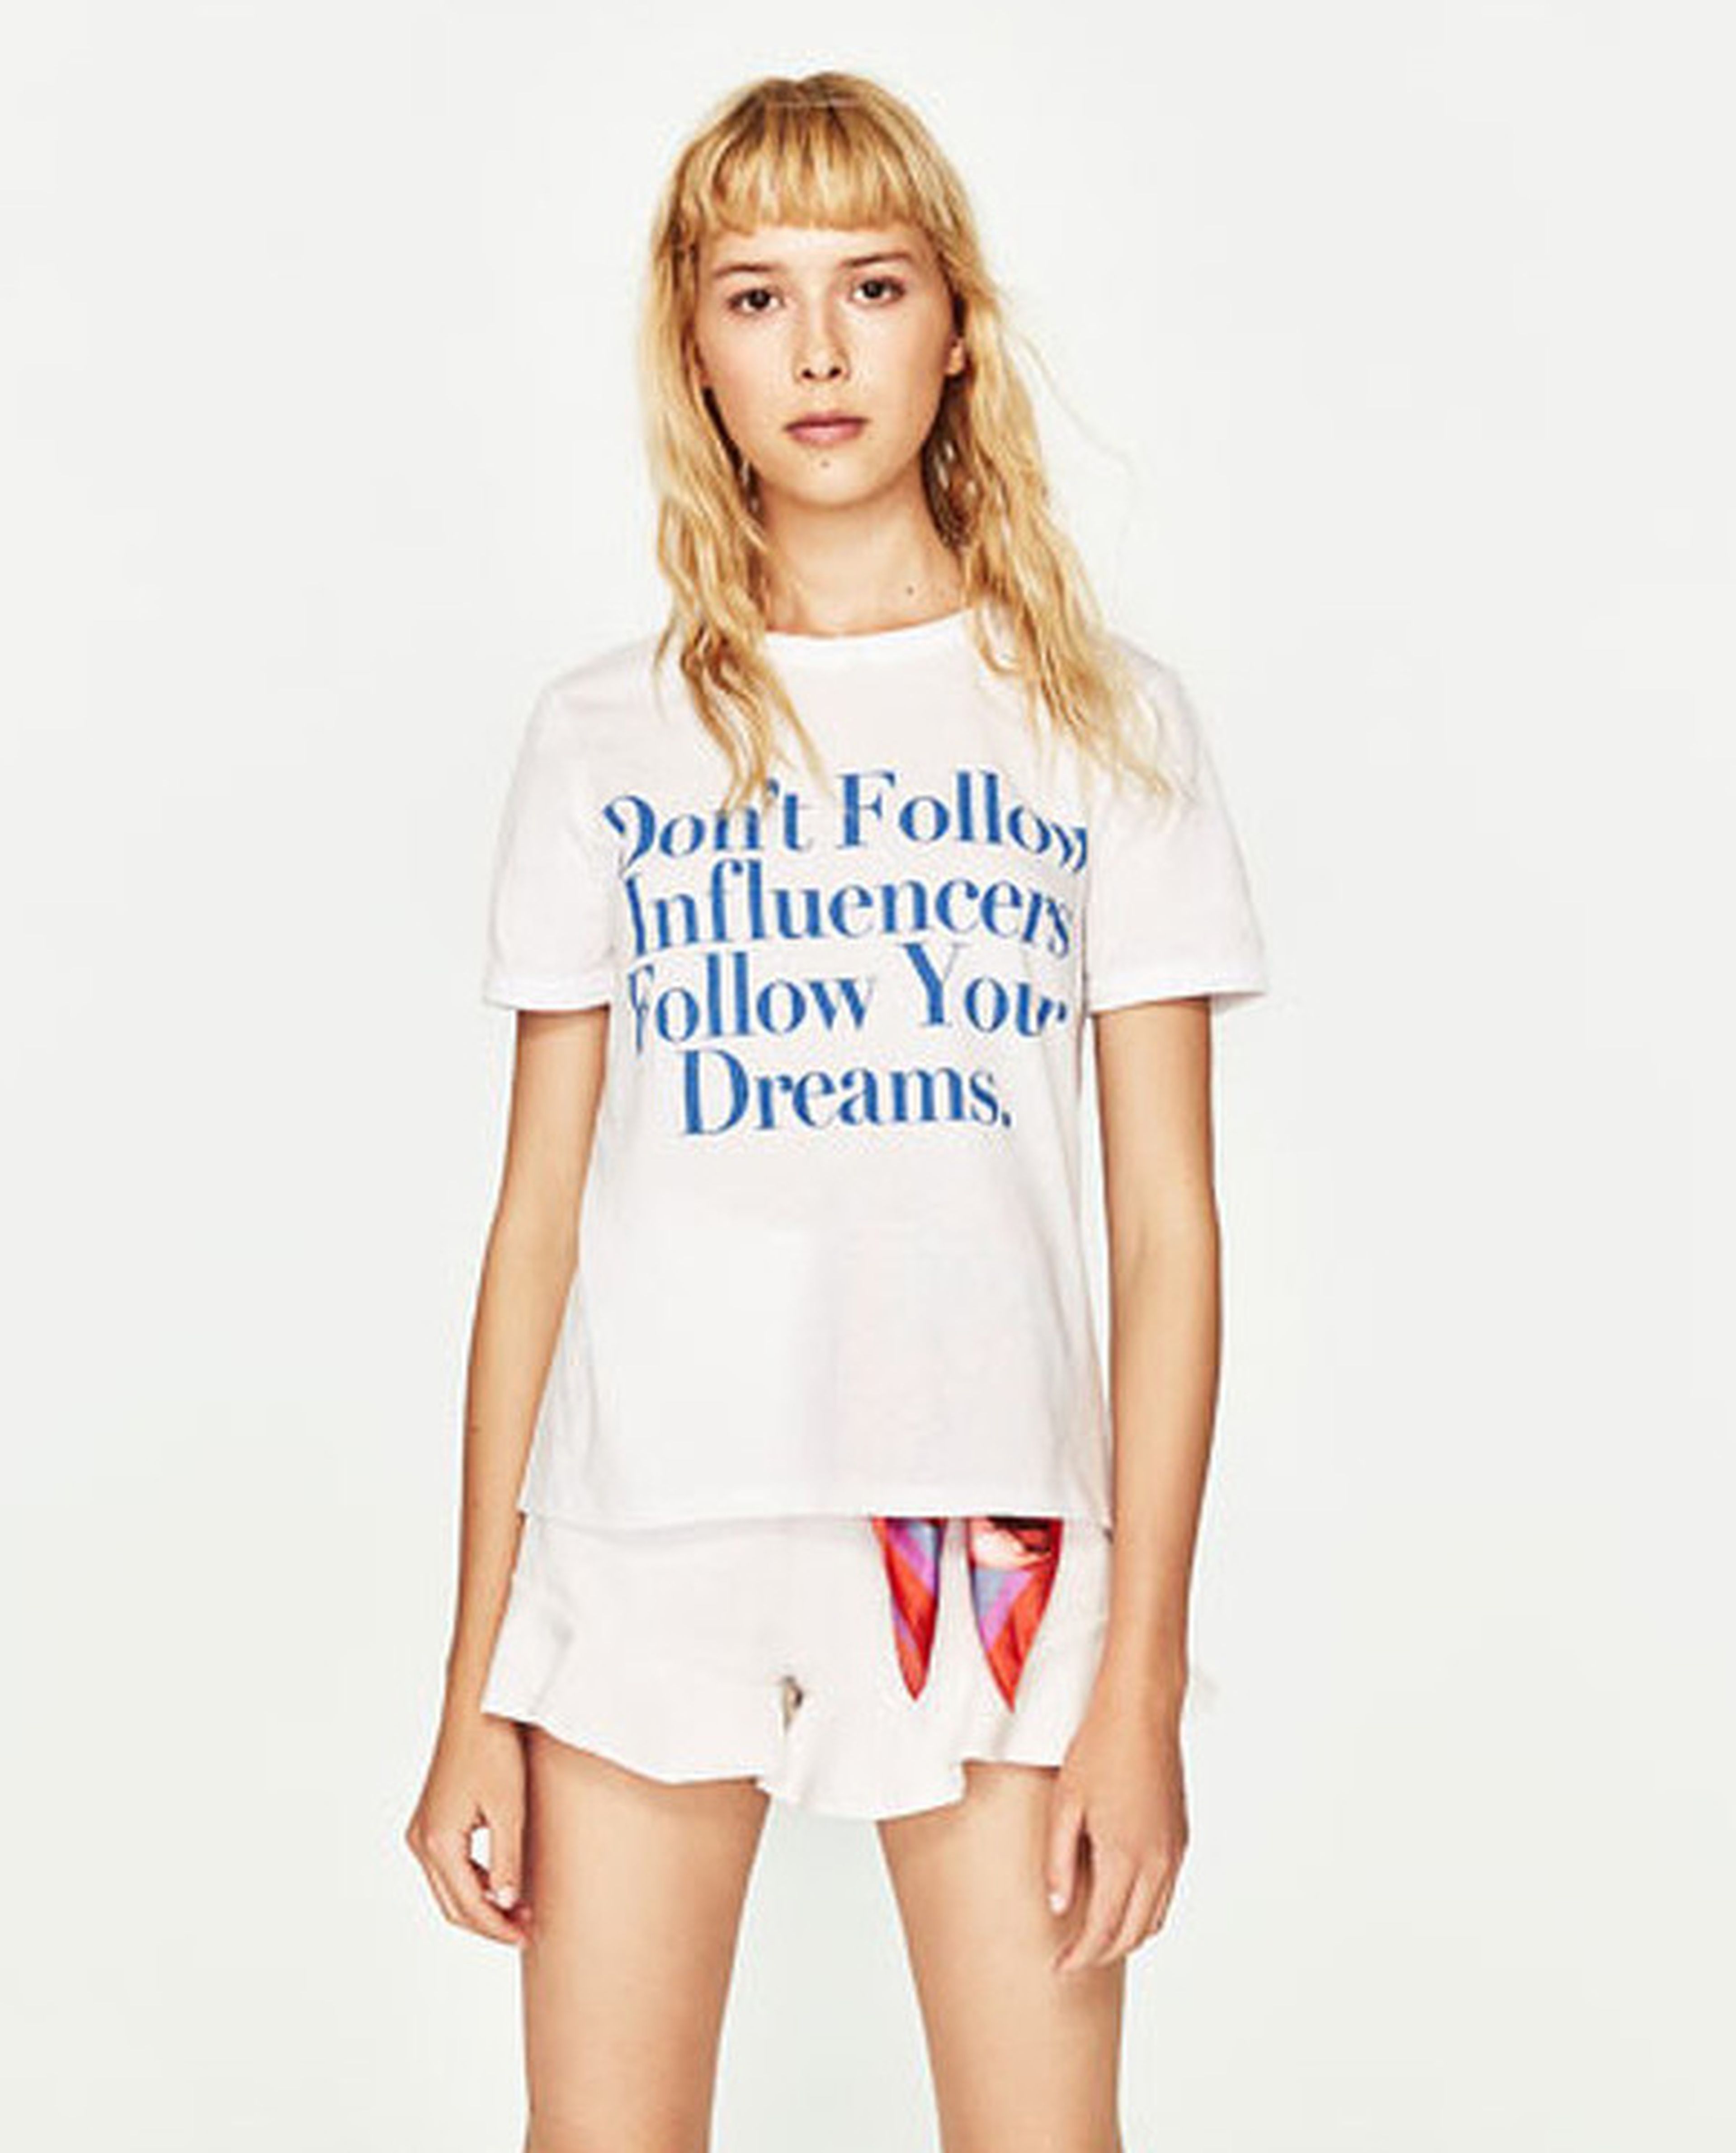 Camiseta de Zara con estampado: "Don't follow influencers, follow your dreams".